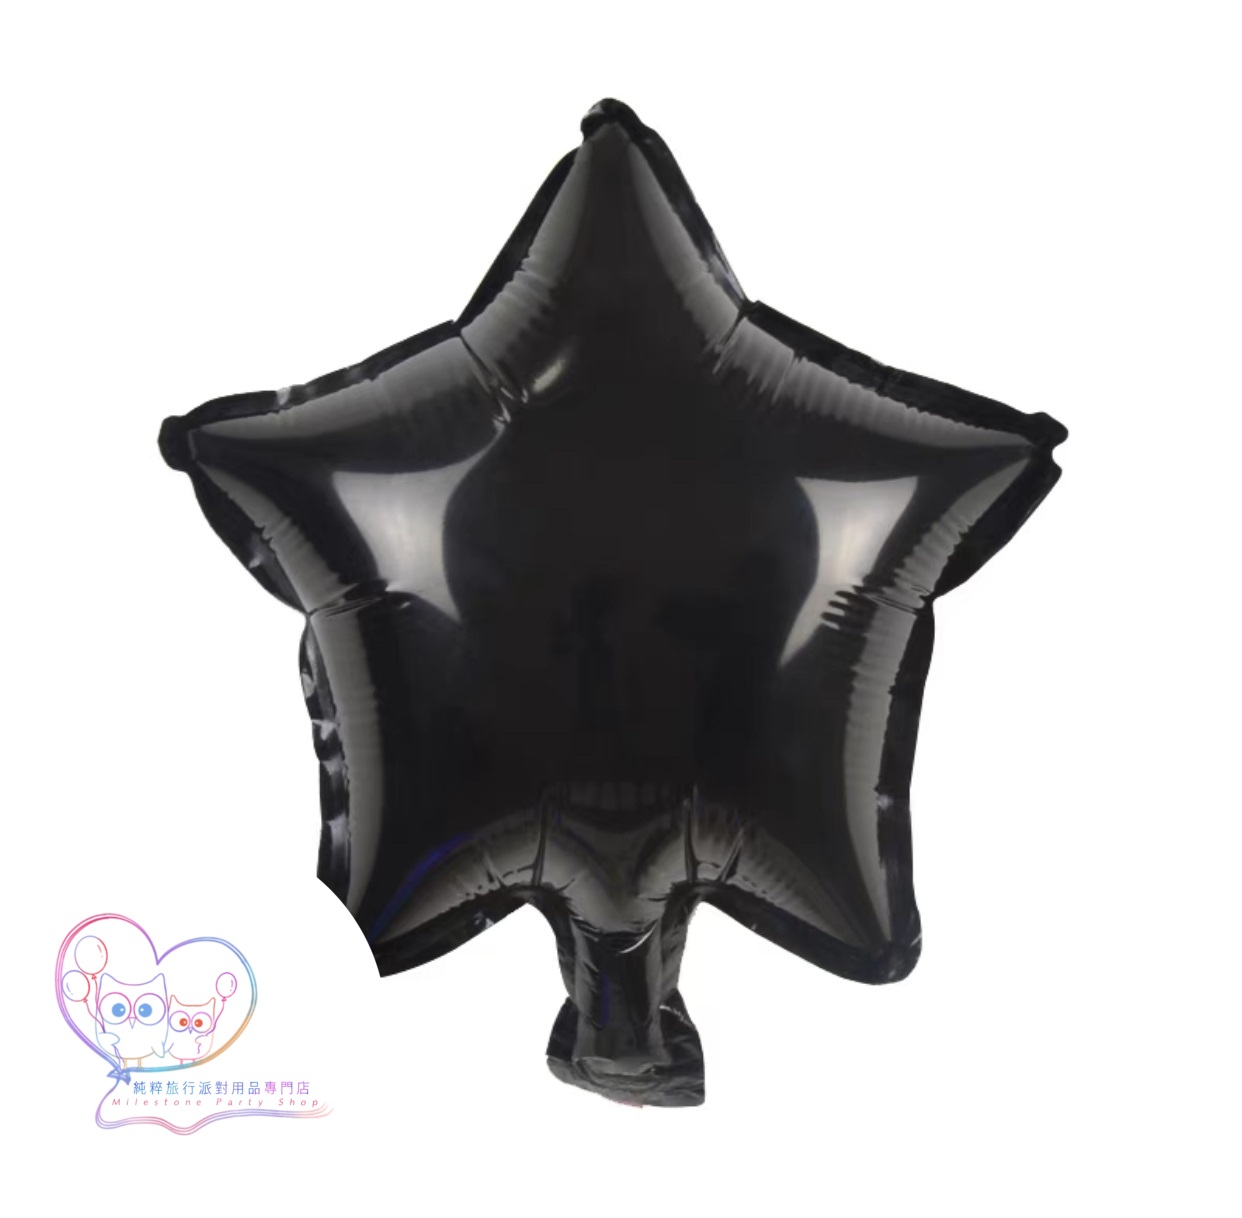 10吋星星鋁膜氣球 (黑色) 10S10